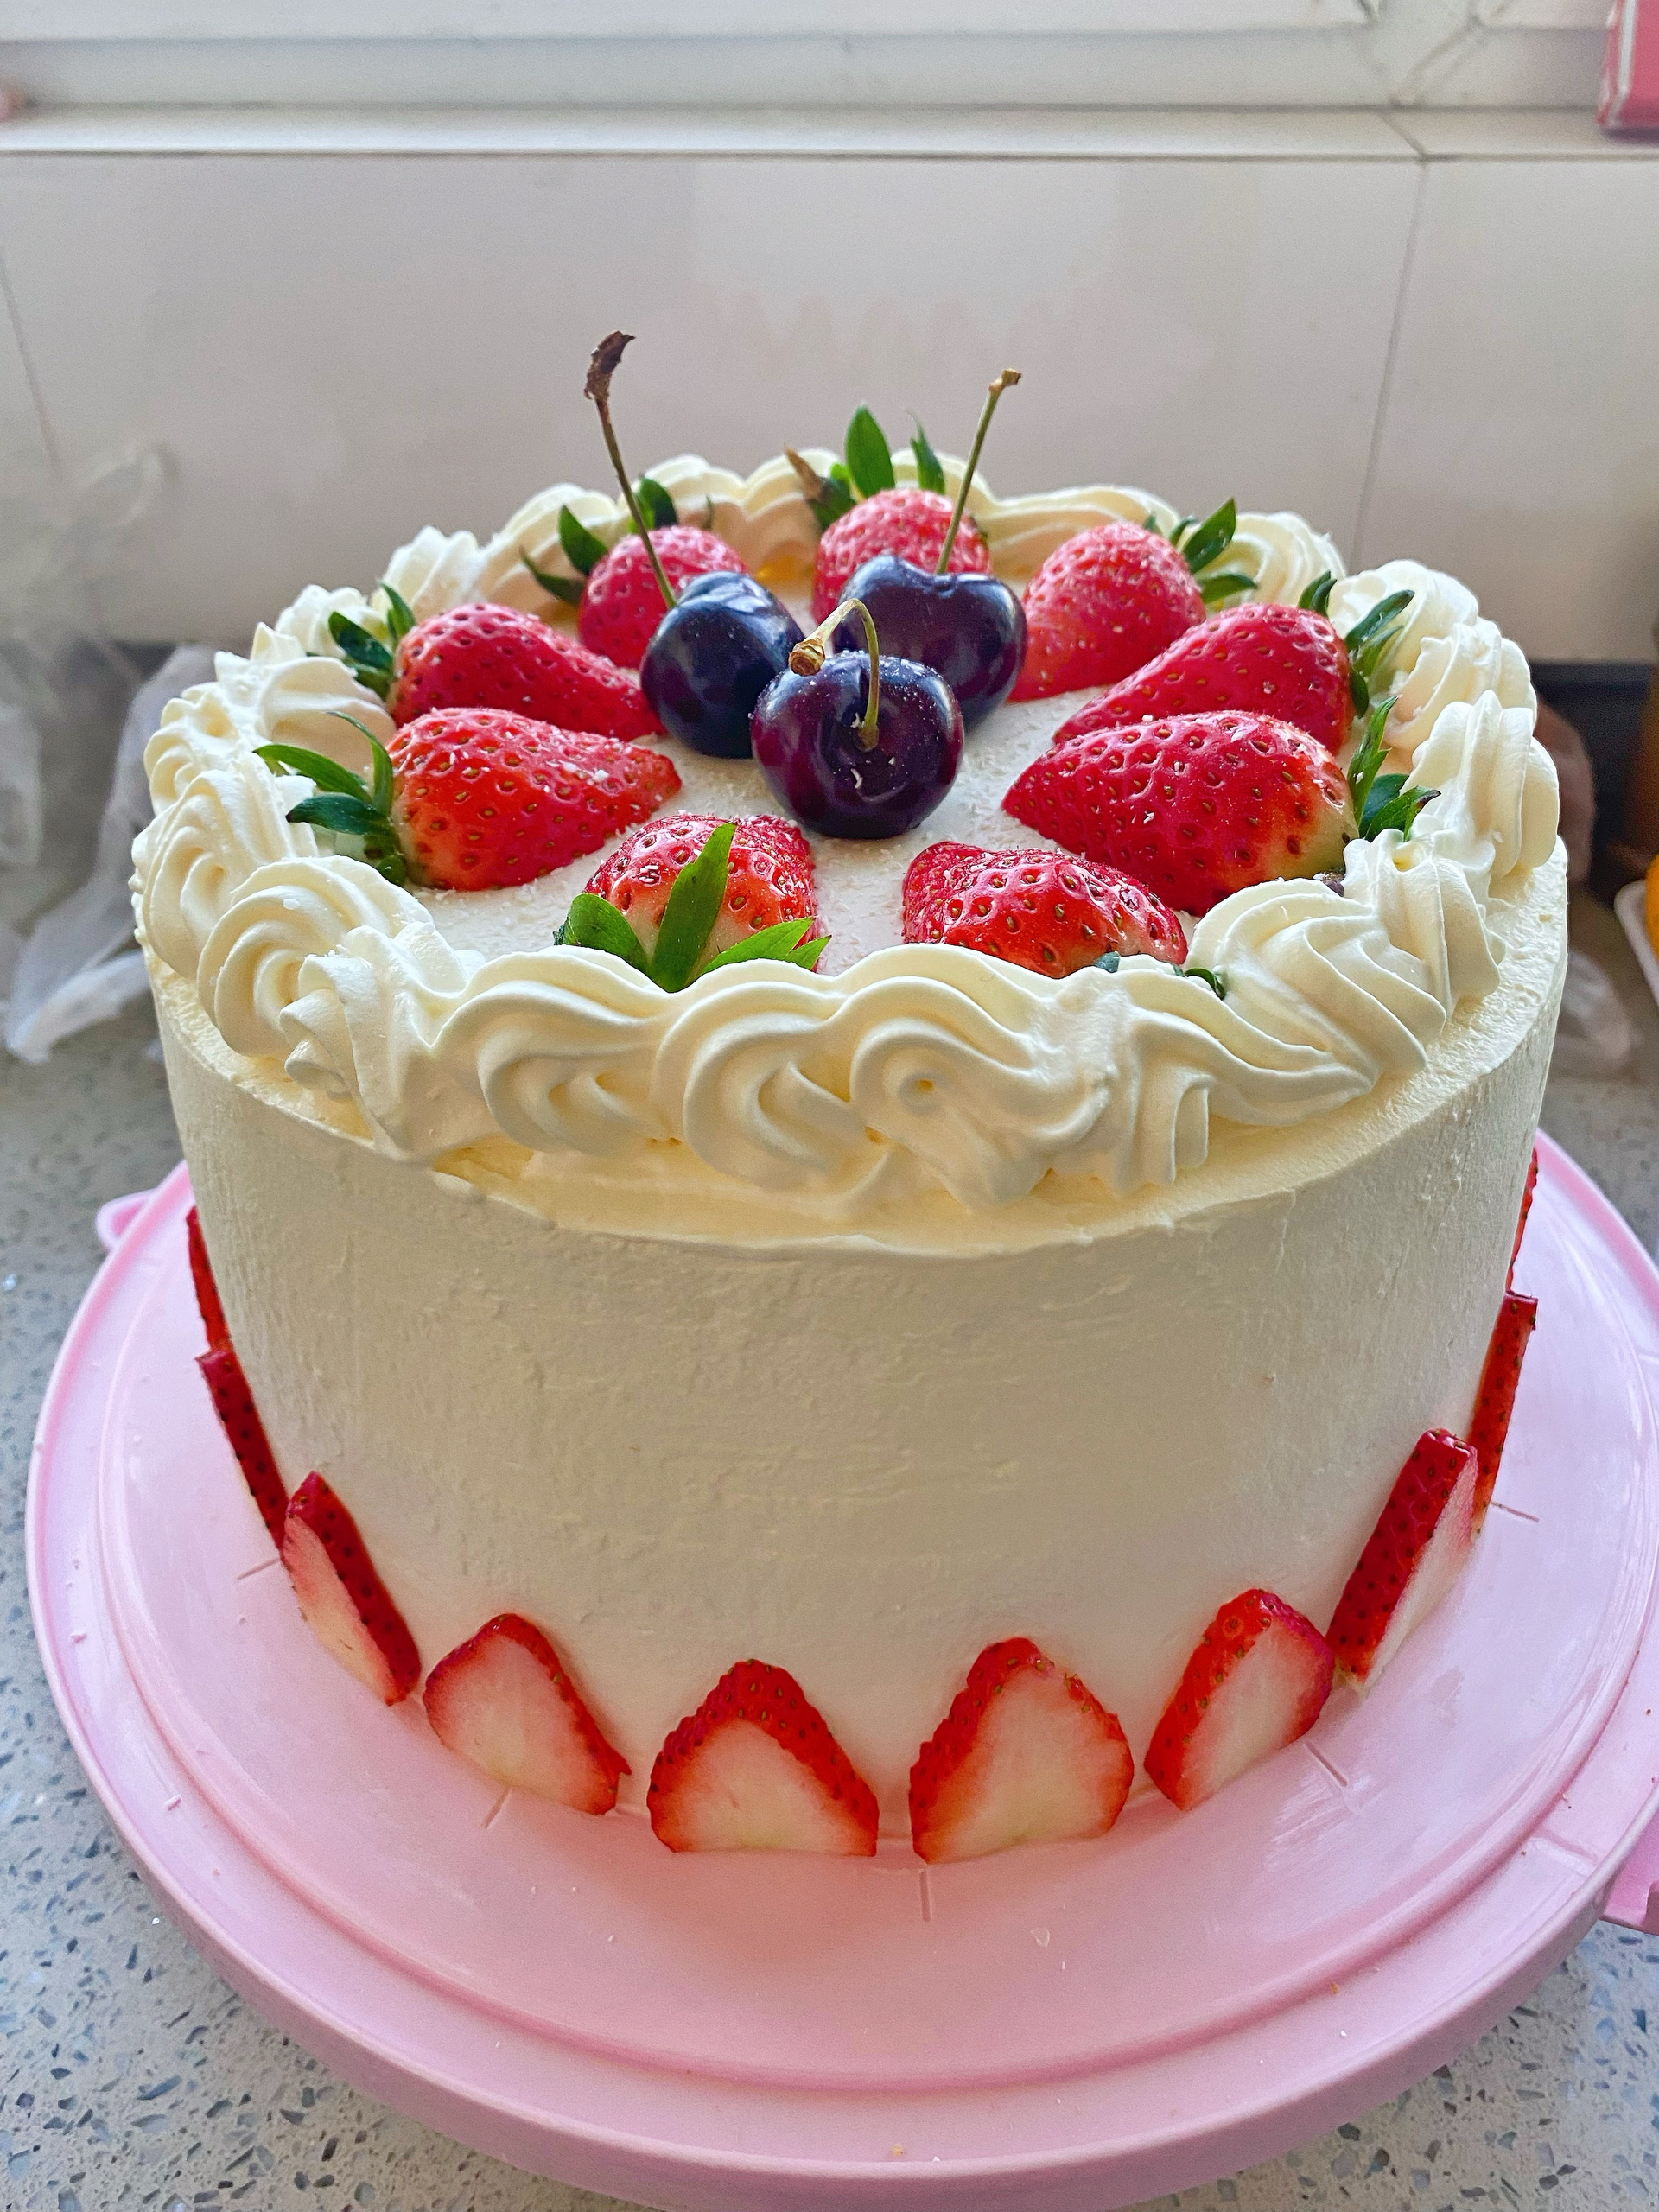 【全网最全合集】搬运🍓漂亮的草莓蛋糕~草莓季装饰灵感图